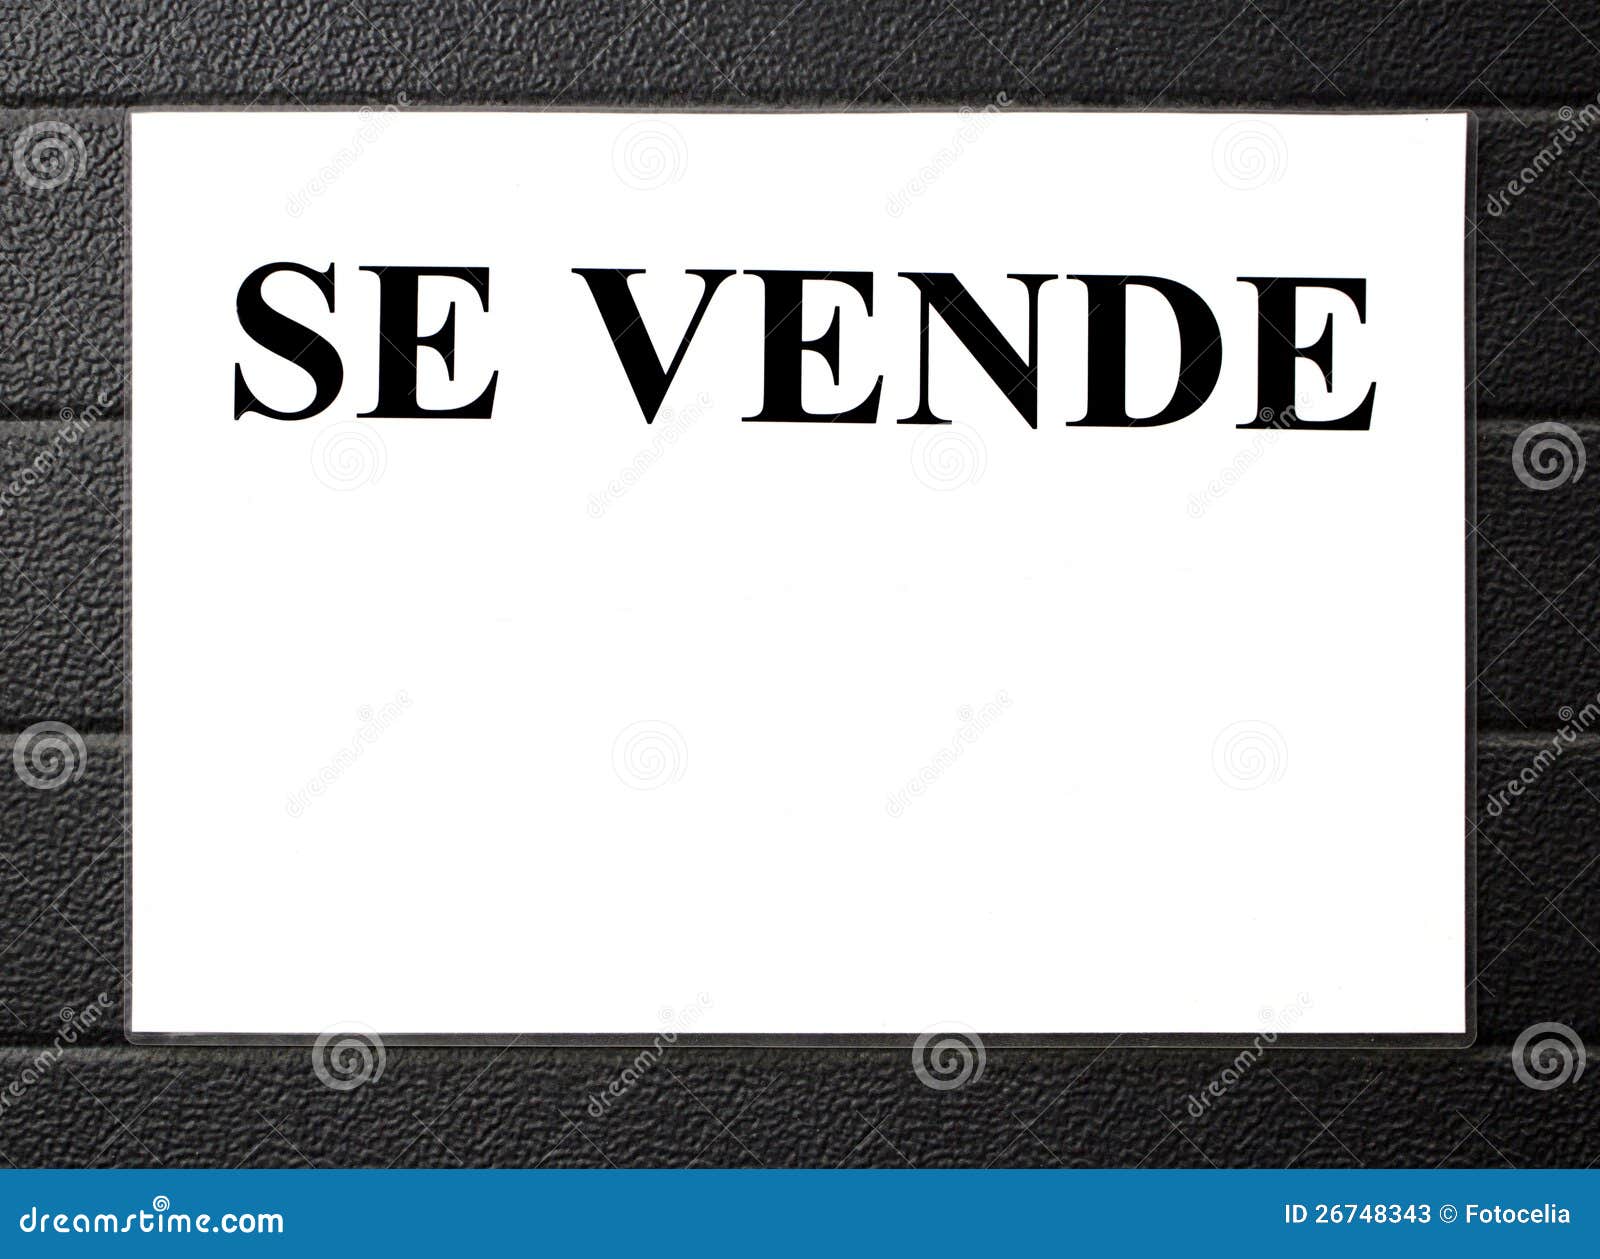 Cartel De Se Vende Se vende el cartel imagen de archivo. Imagen de anuncio - 26748343